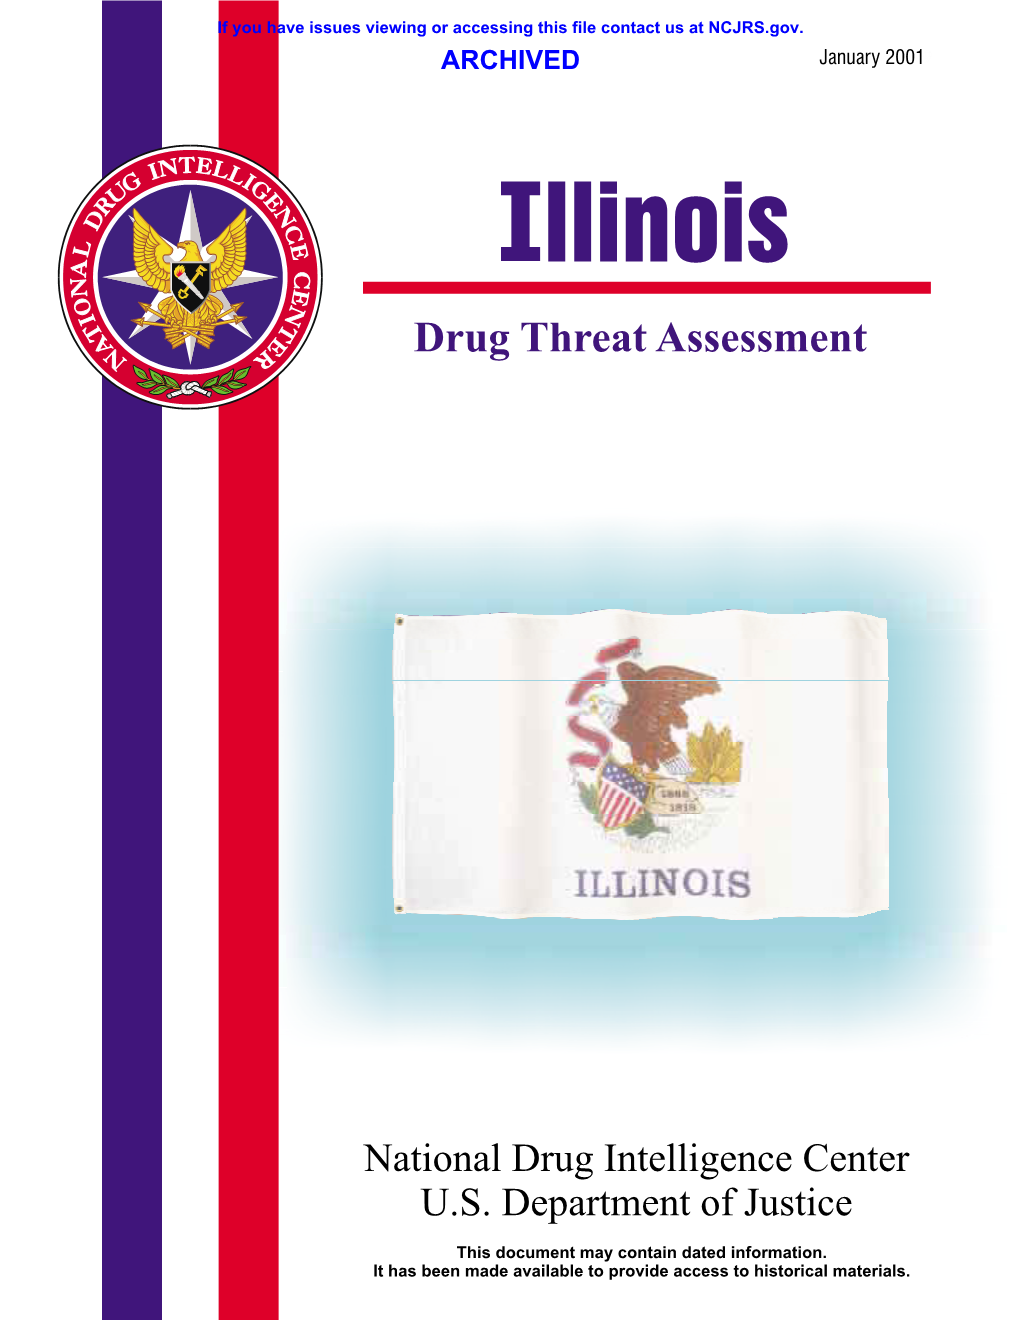 Illinois Drug Threat Assessment